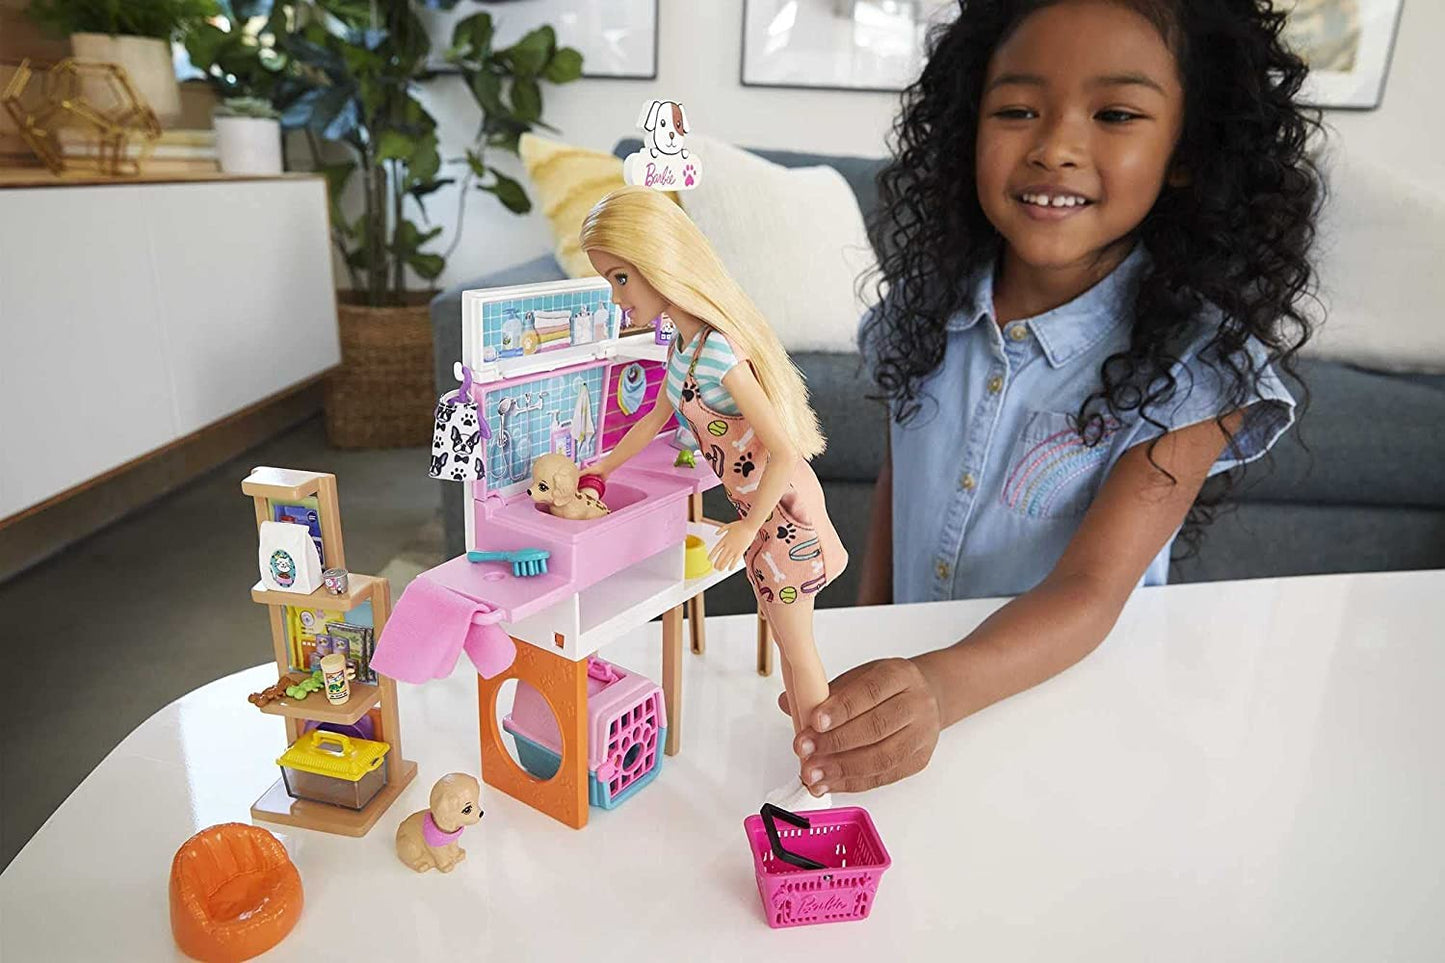 Set de joaca Barbie - Pet supply store, 25 accesorii